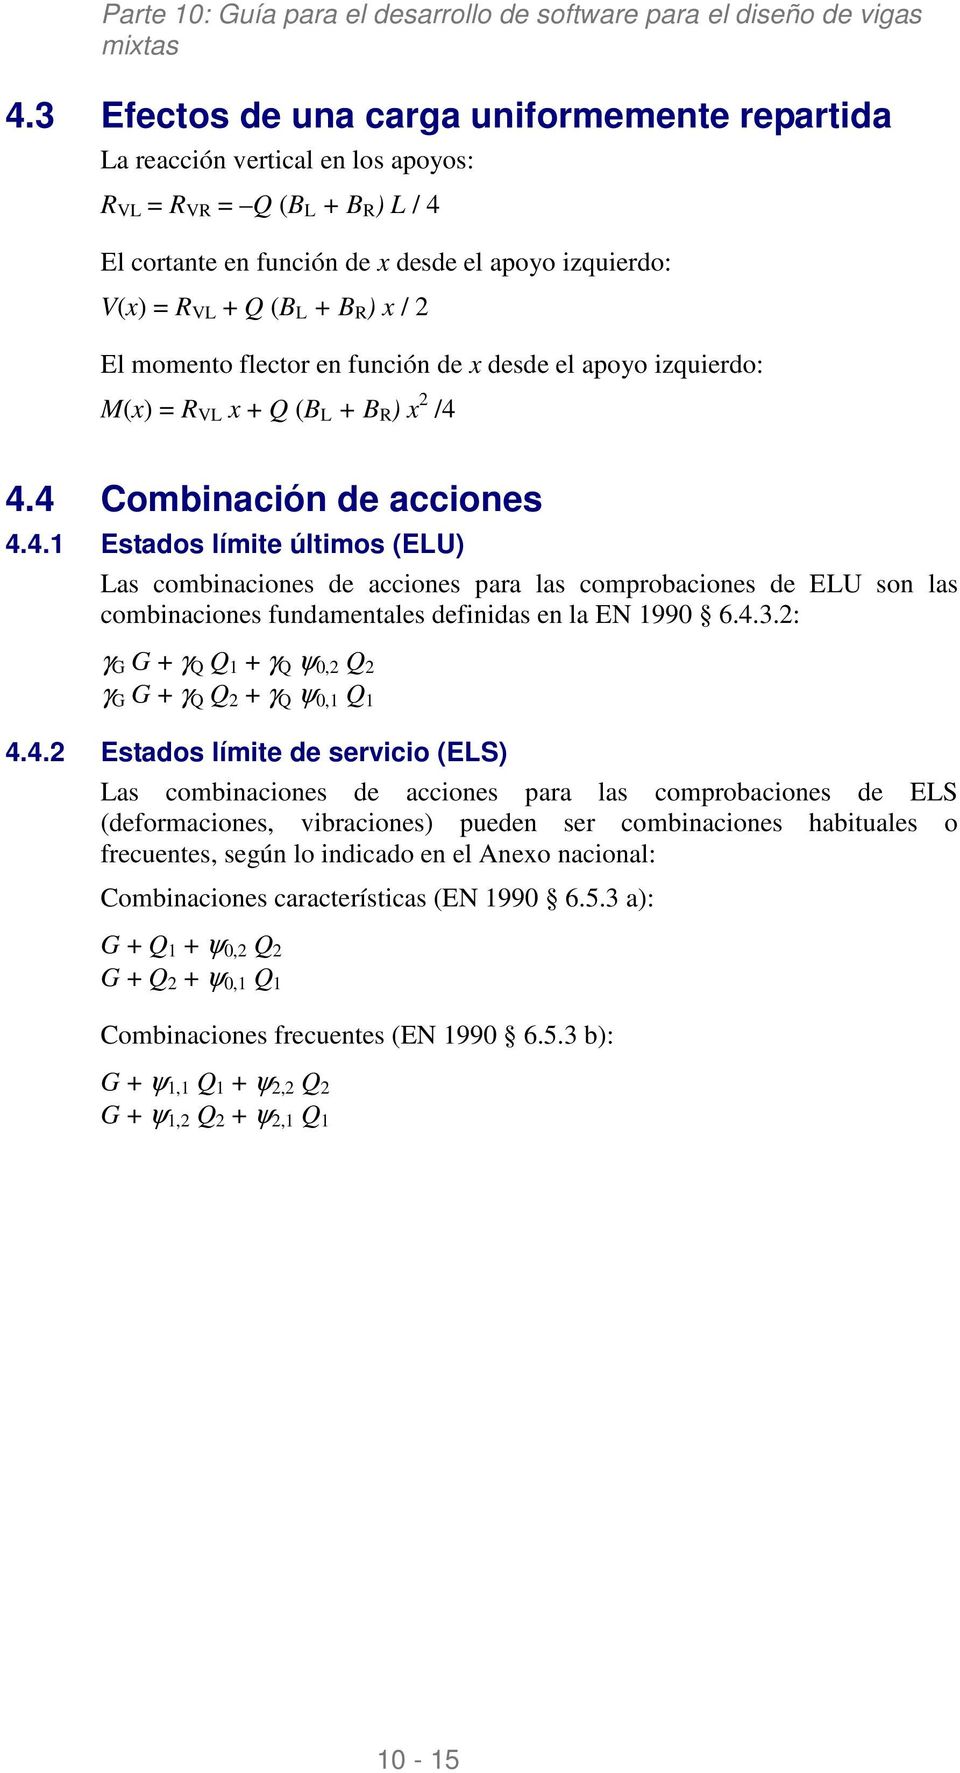 4.4 Combinación de acciones 4.4.1 Estados límite últimos (ELU) Las combinaciones de acciones para las comprobaciones de ELU son las combinaciones fundamentales definidas en la EN 1990 6.4.3.